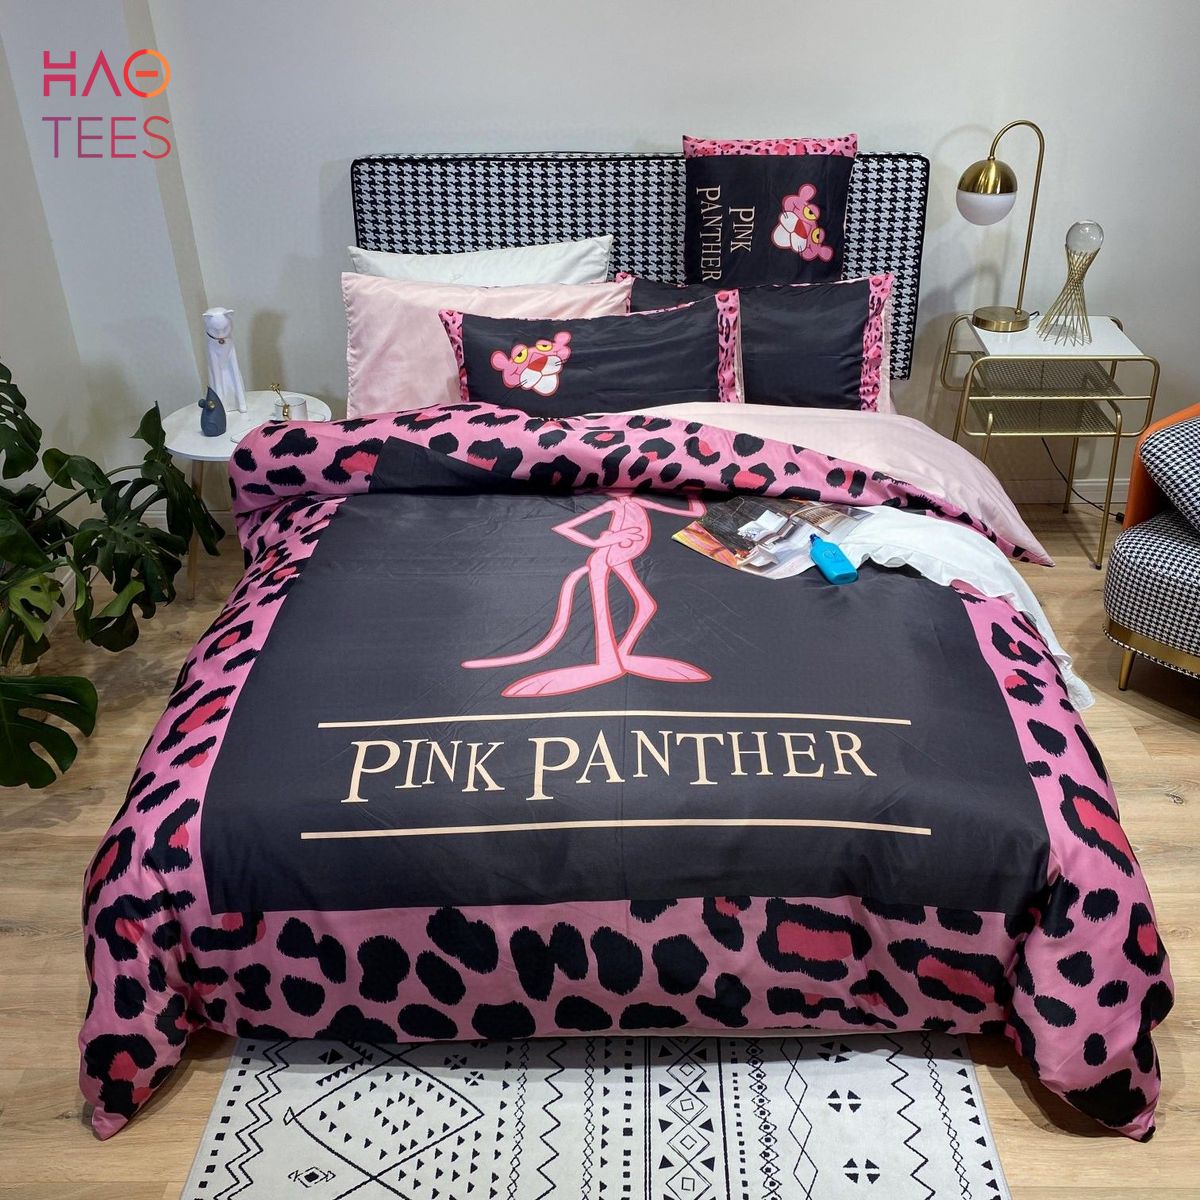 Luxury Pink Panther Bedding Sets Duvet Cover Bedroom Sets